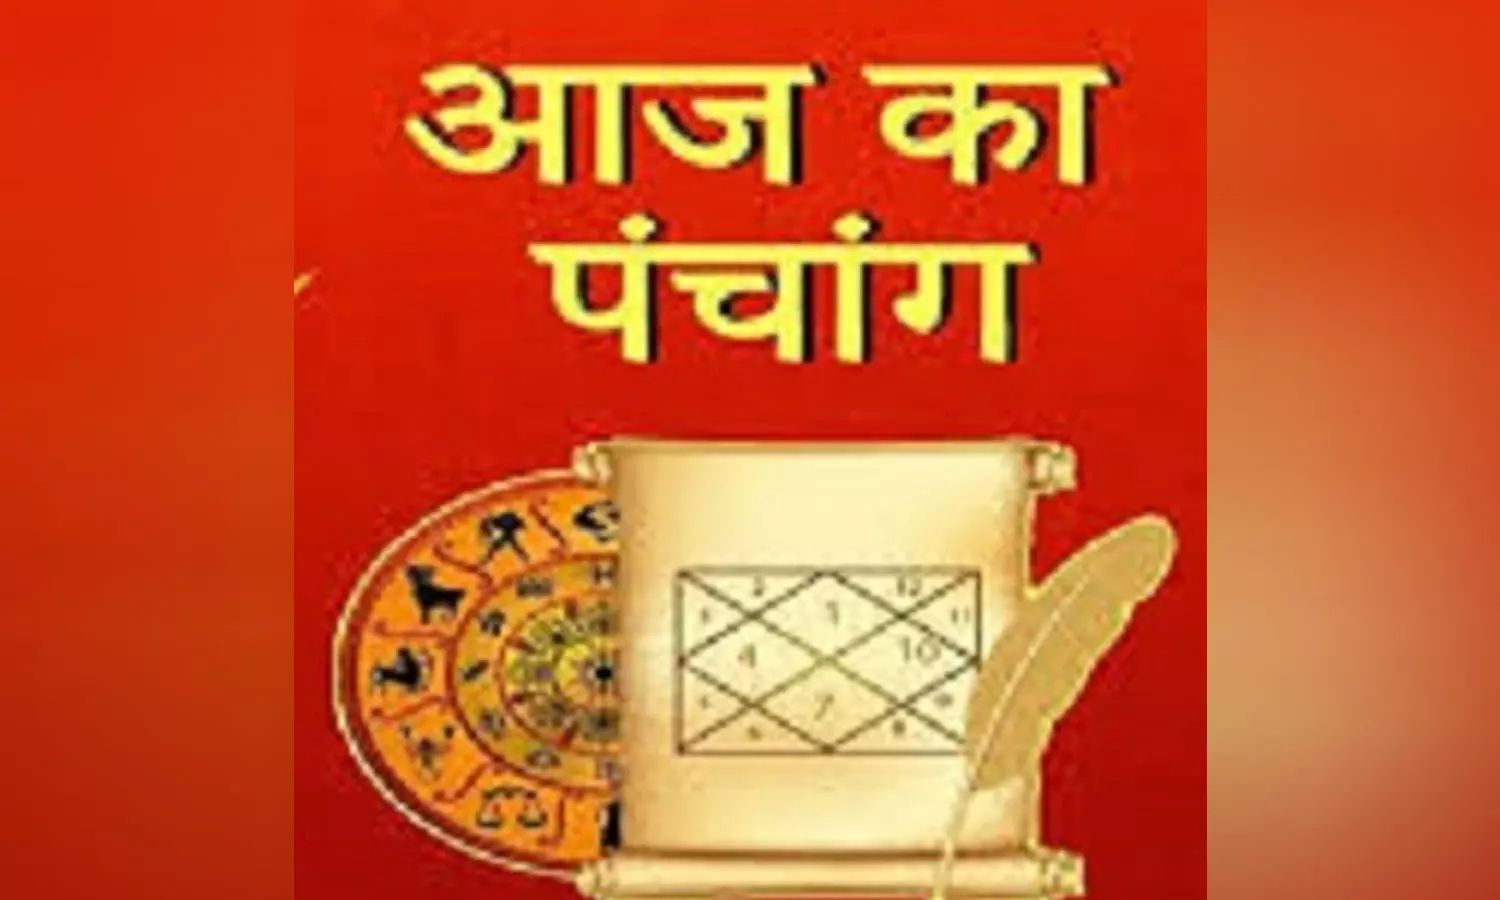 16 February 2023 Ka Panchang Tithi in Hindi : आज का सूर्योदय-सूर्यास्त के साथ चौघड़िया-राहुकल,  जानने के लिए देखिए आज का पंचांग